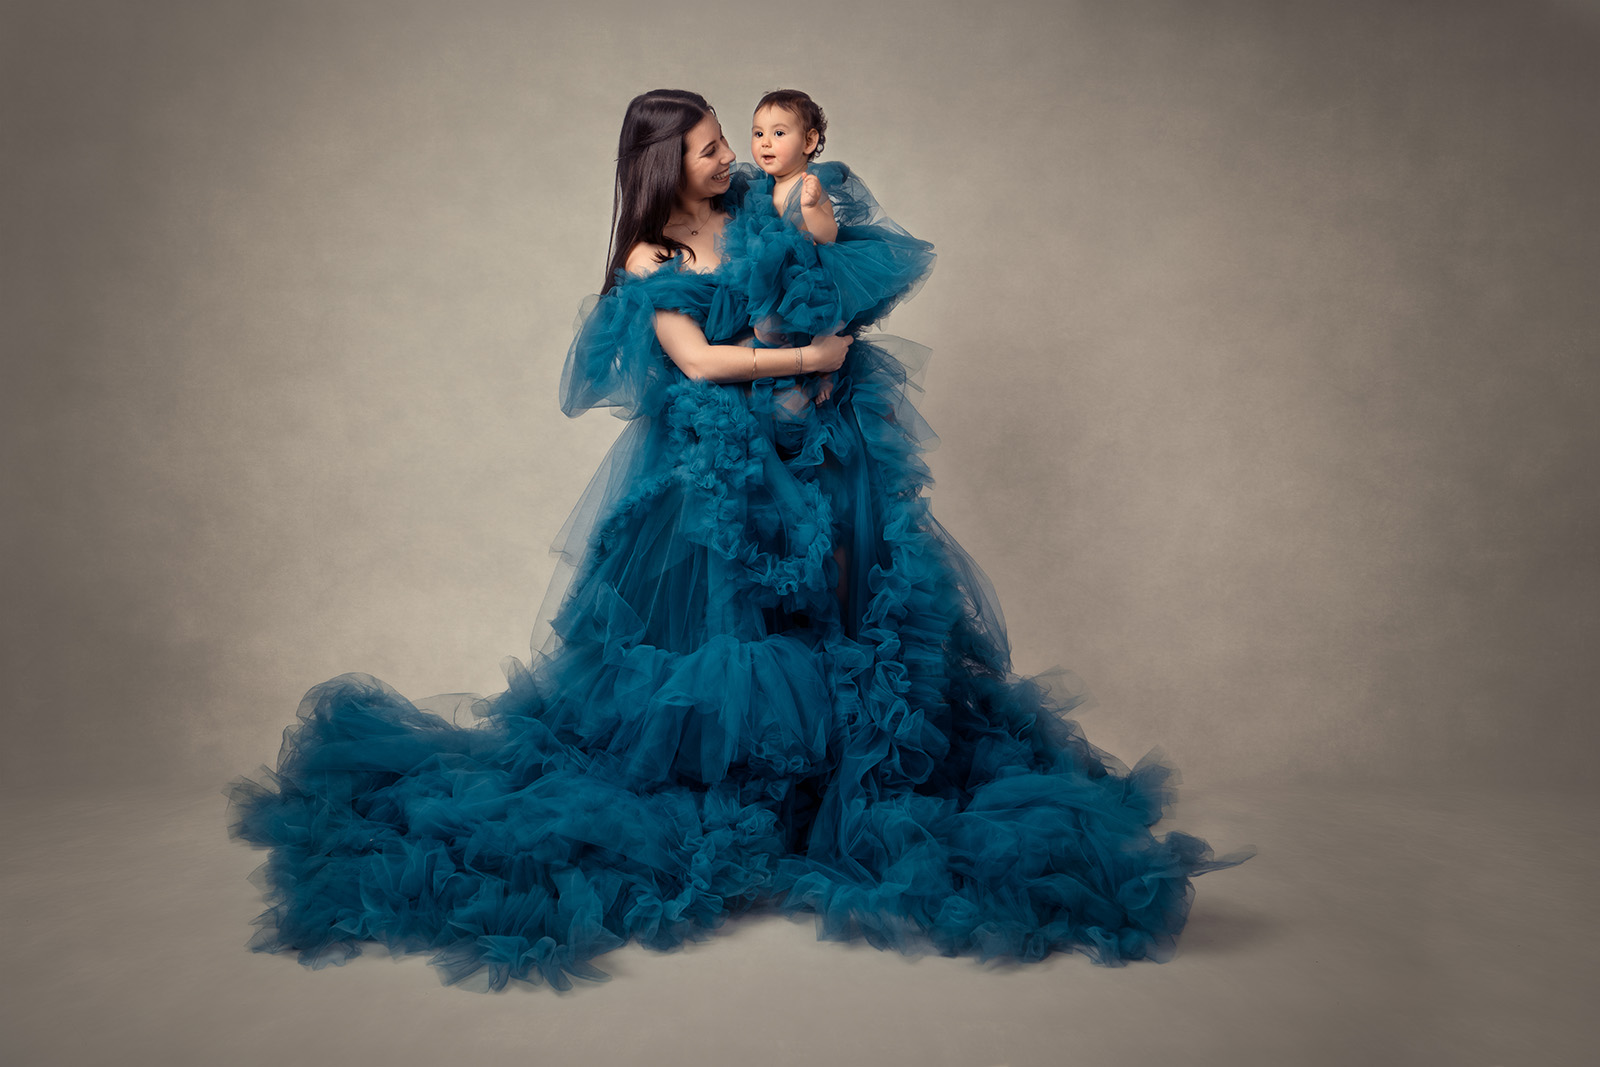 femme brune habillée d'une robe en tulle bleu et tenant son enfant qui est habillée pareil qu'elle